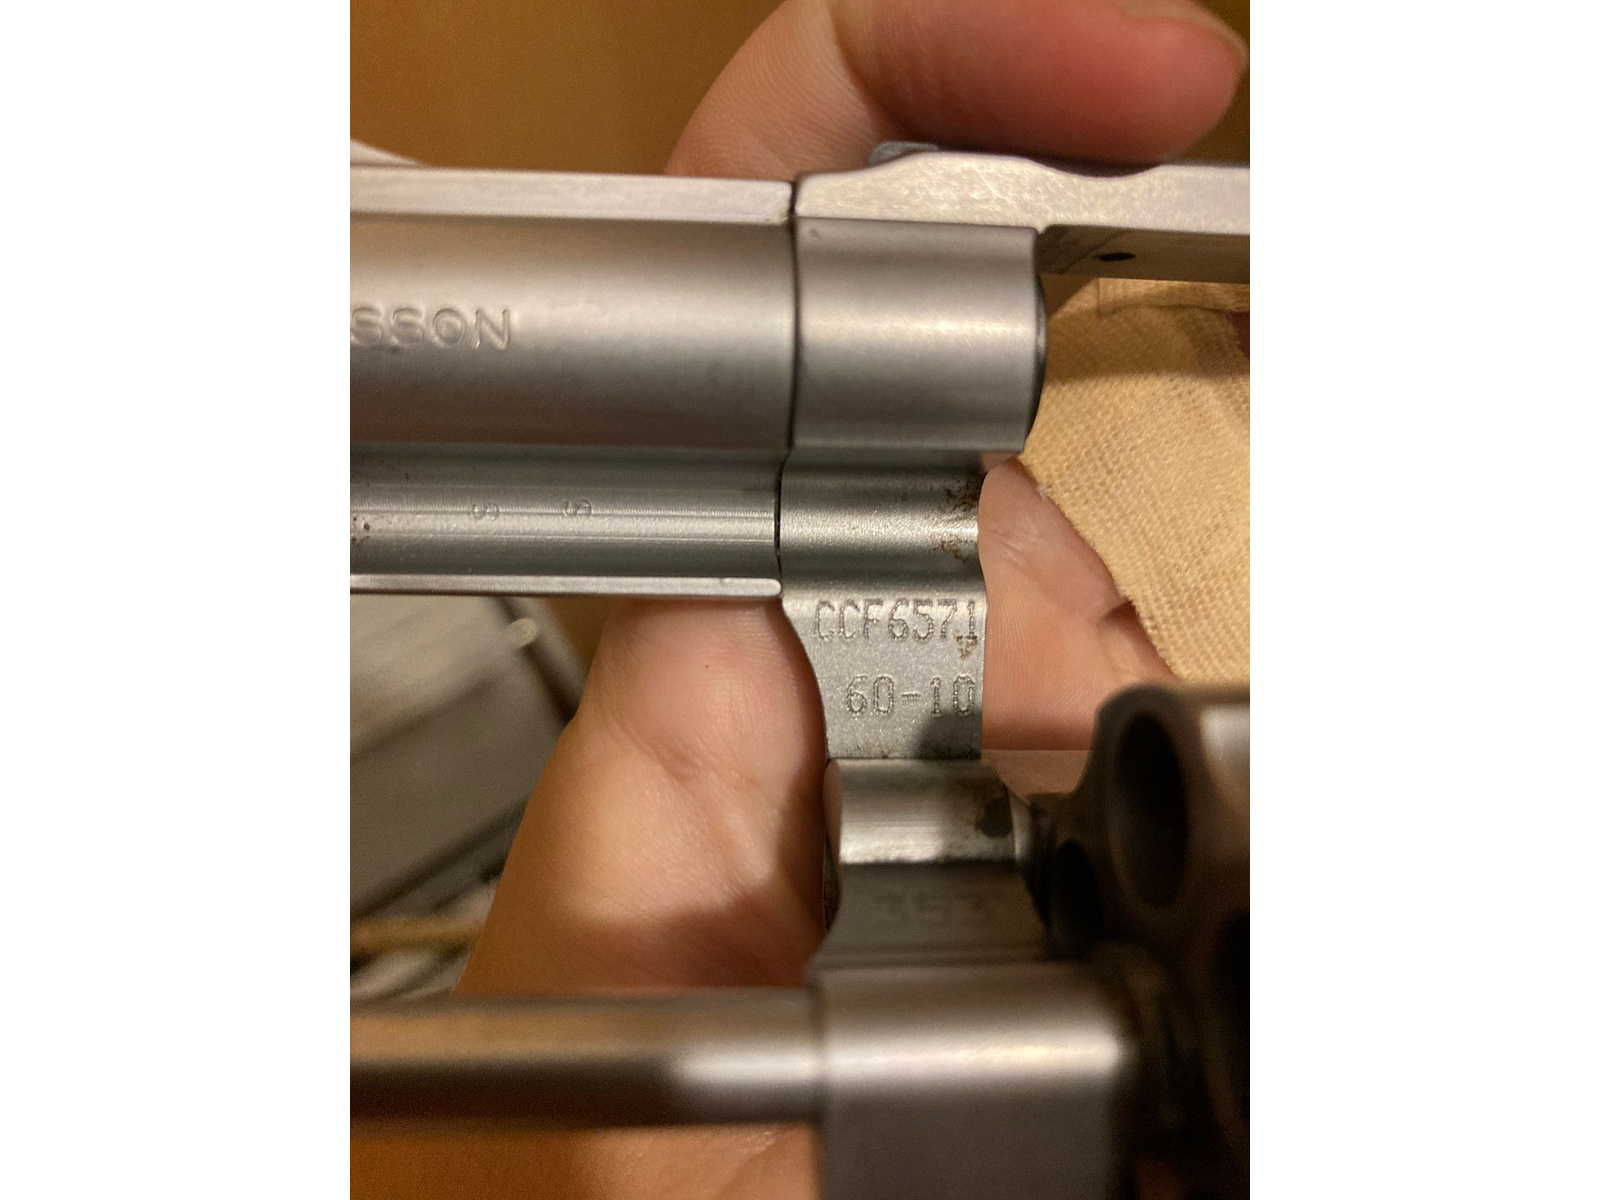 Revolver S&W .357 Magnum